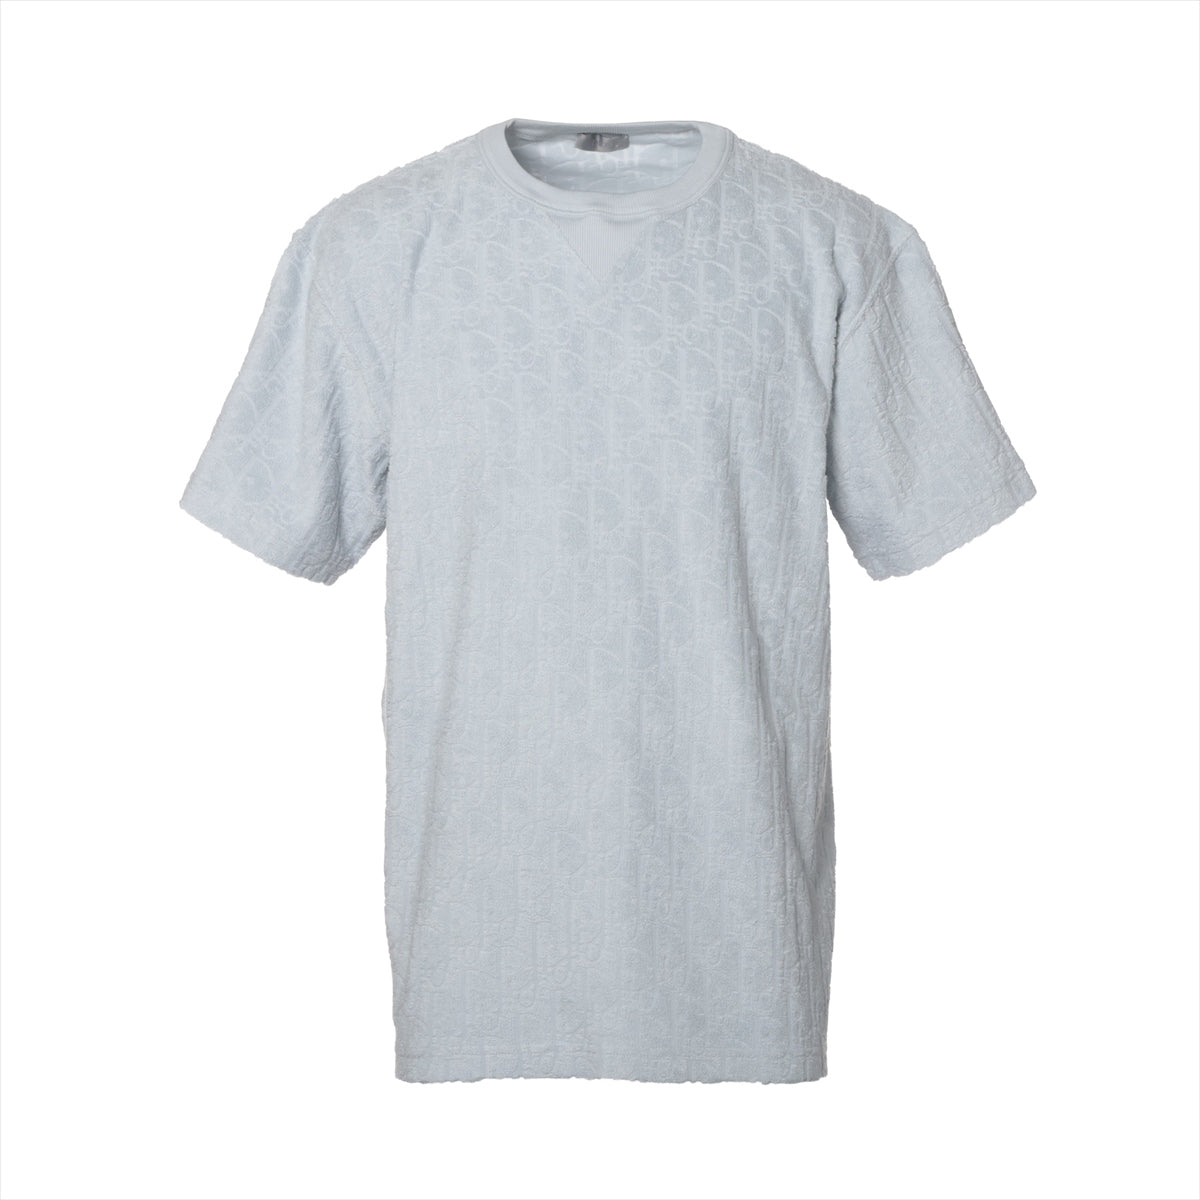 ディオール オブリーク コットン Tシャツ M メンズ ブルー  113J692A0614 パイル